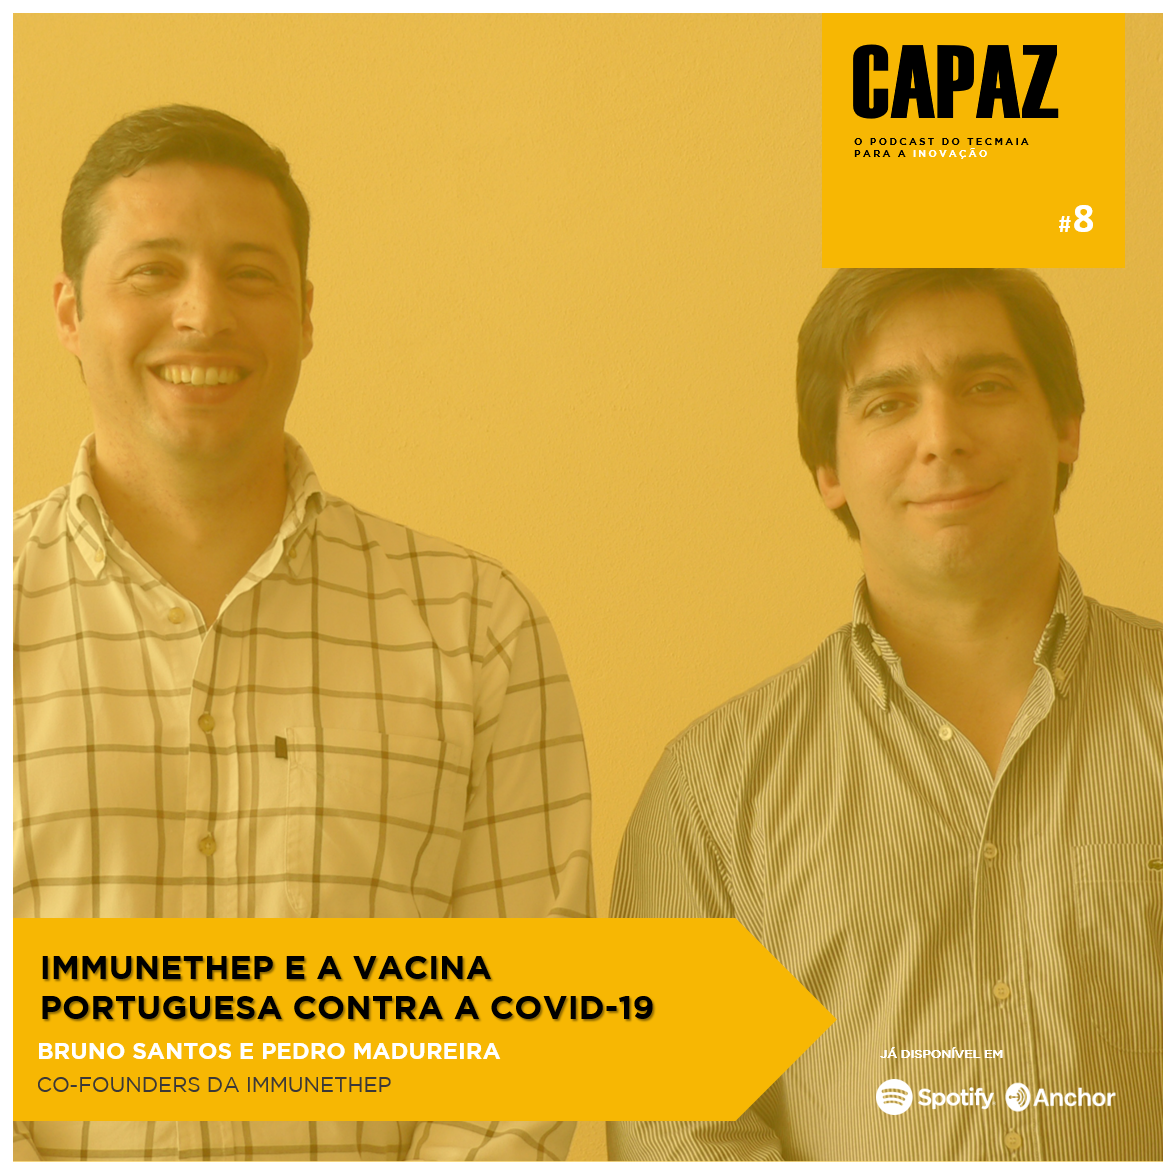 CAPAZ #8 - Immunethep e a vacina portuguesa contra a Covid-19